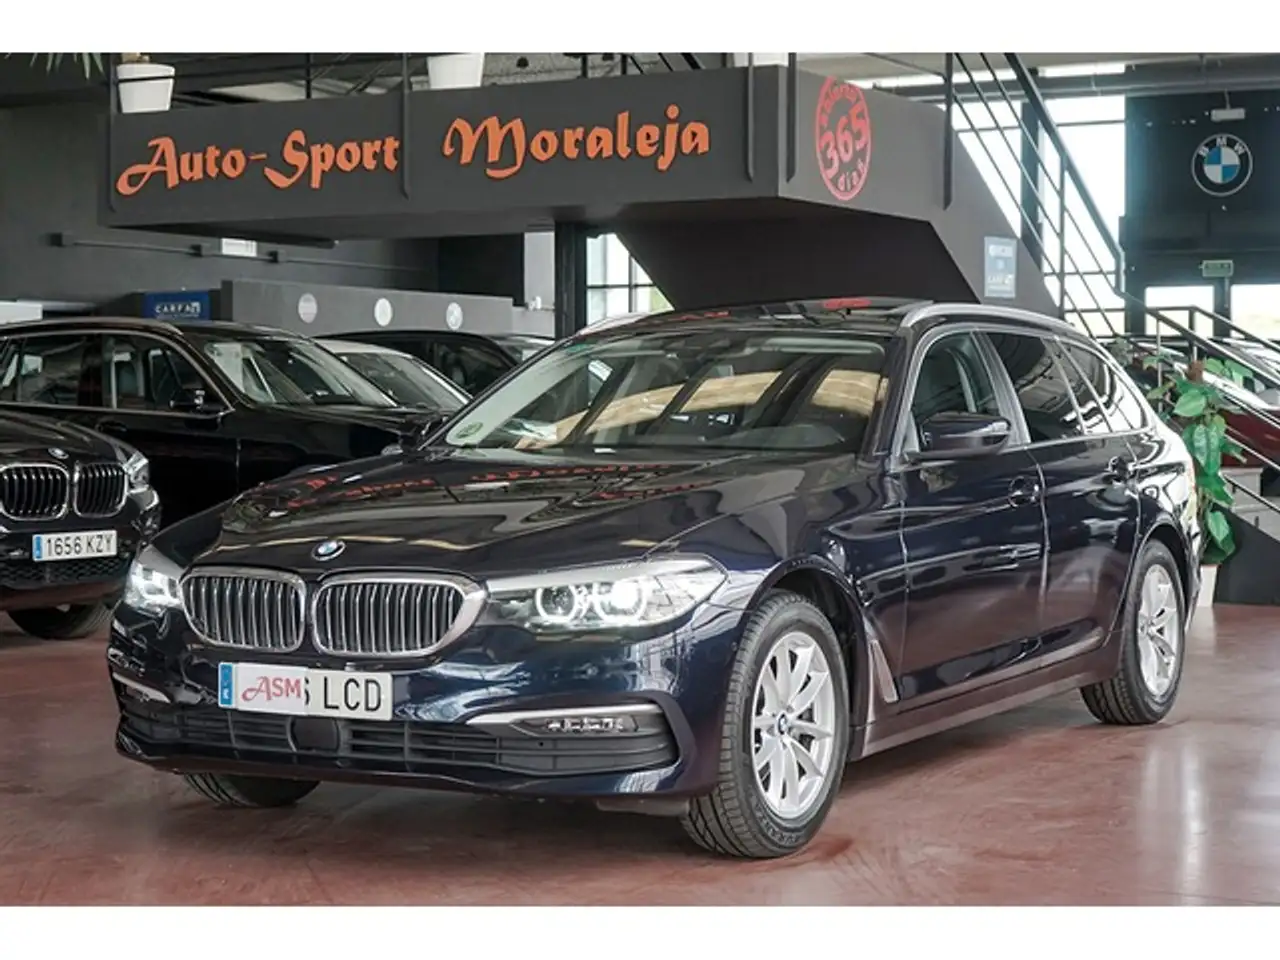 BMW 520 Break in Blauw tweedehands in ARROYOMOLINOS voor € 24.900,-